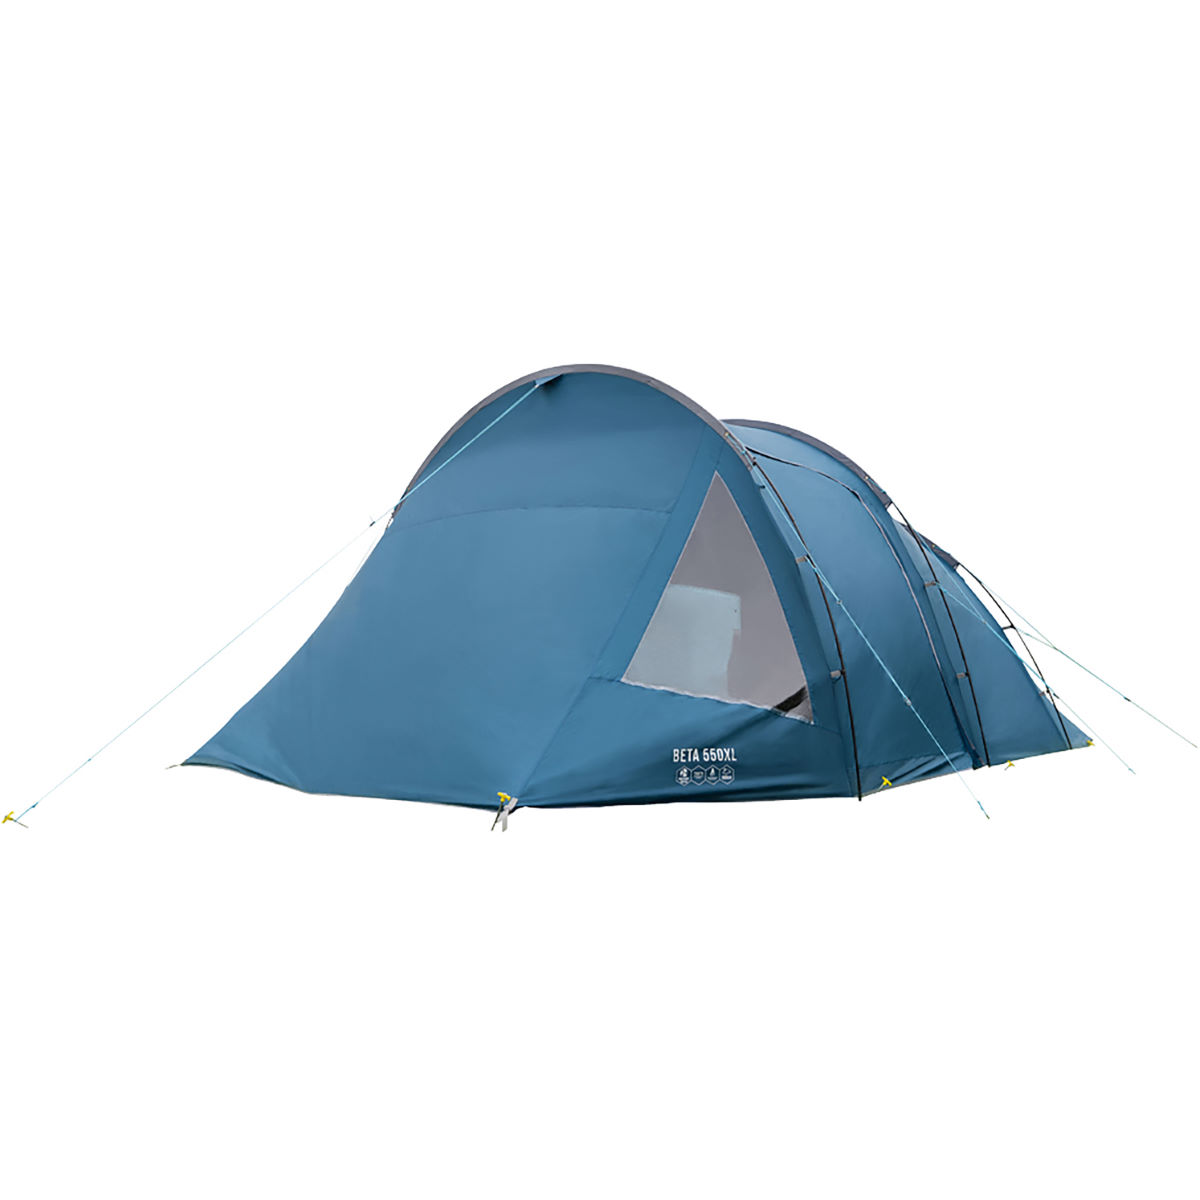 Vango Beta 550XL Tent - Tiendas de campaña